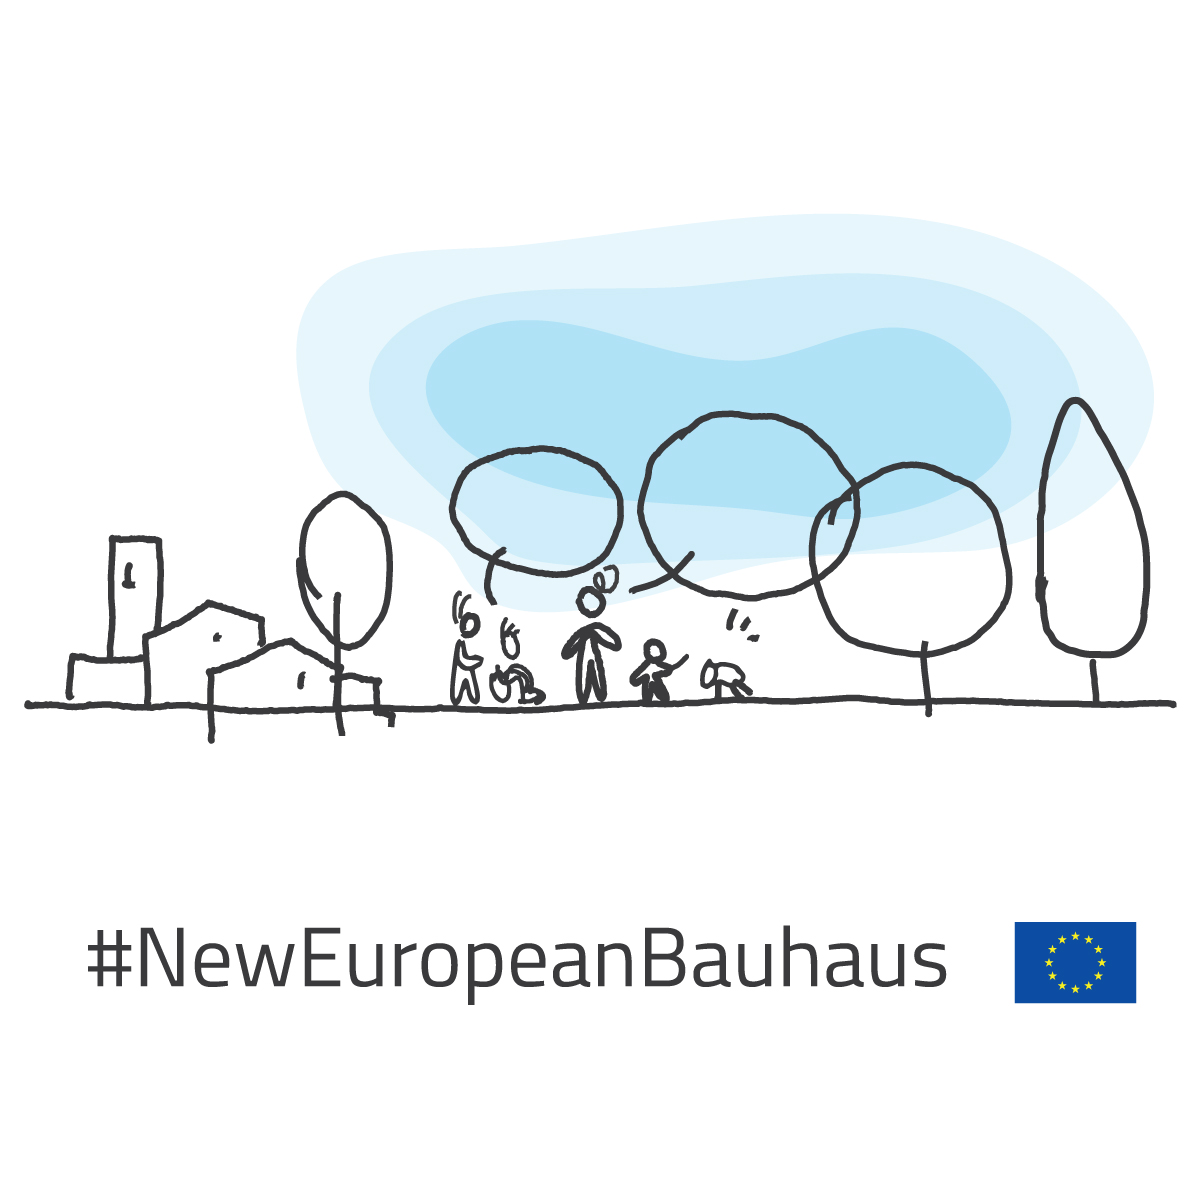 New European Bauhaus funding opportunities